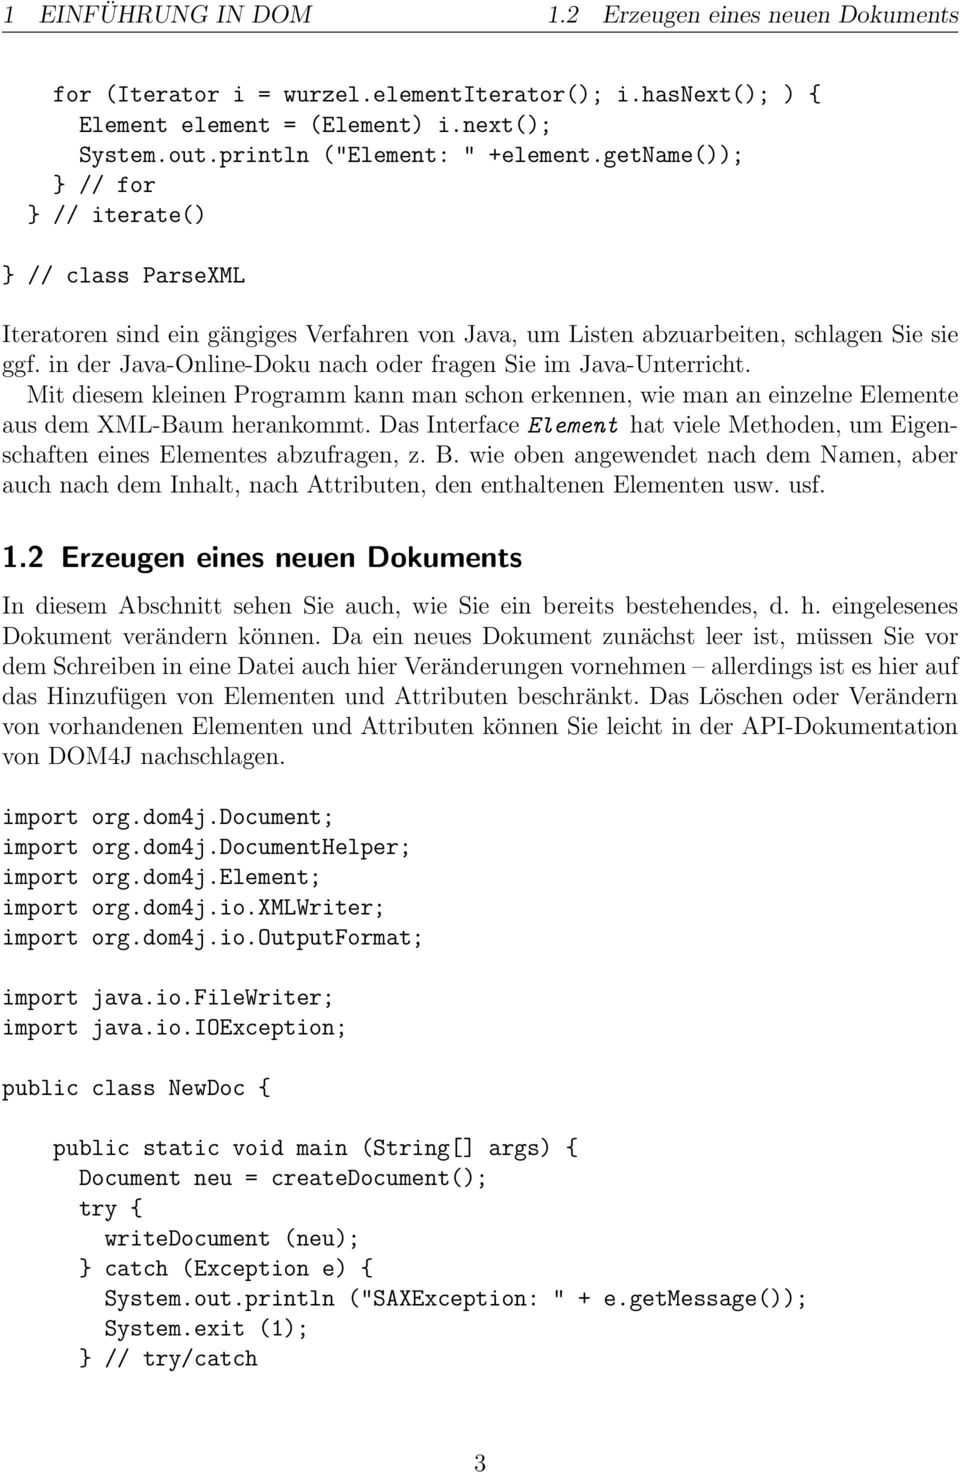 in der Java-Online-Doku nach oder fragen Sie im Java-Unterricht. Mit diesem kleinen Programm kann man schon erkennen, wie man an einzelne Elemente aus dem XML-Baum herankommt.